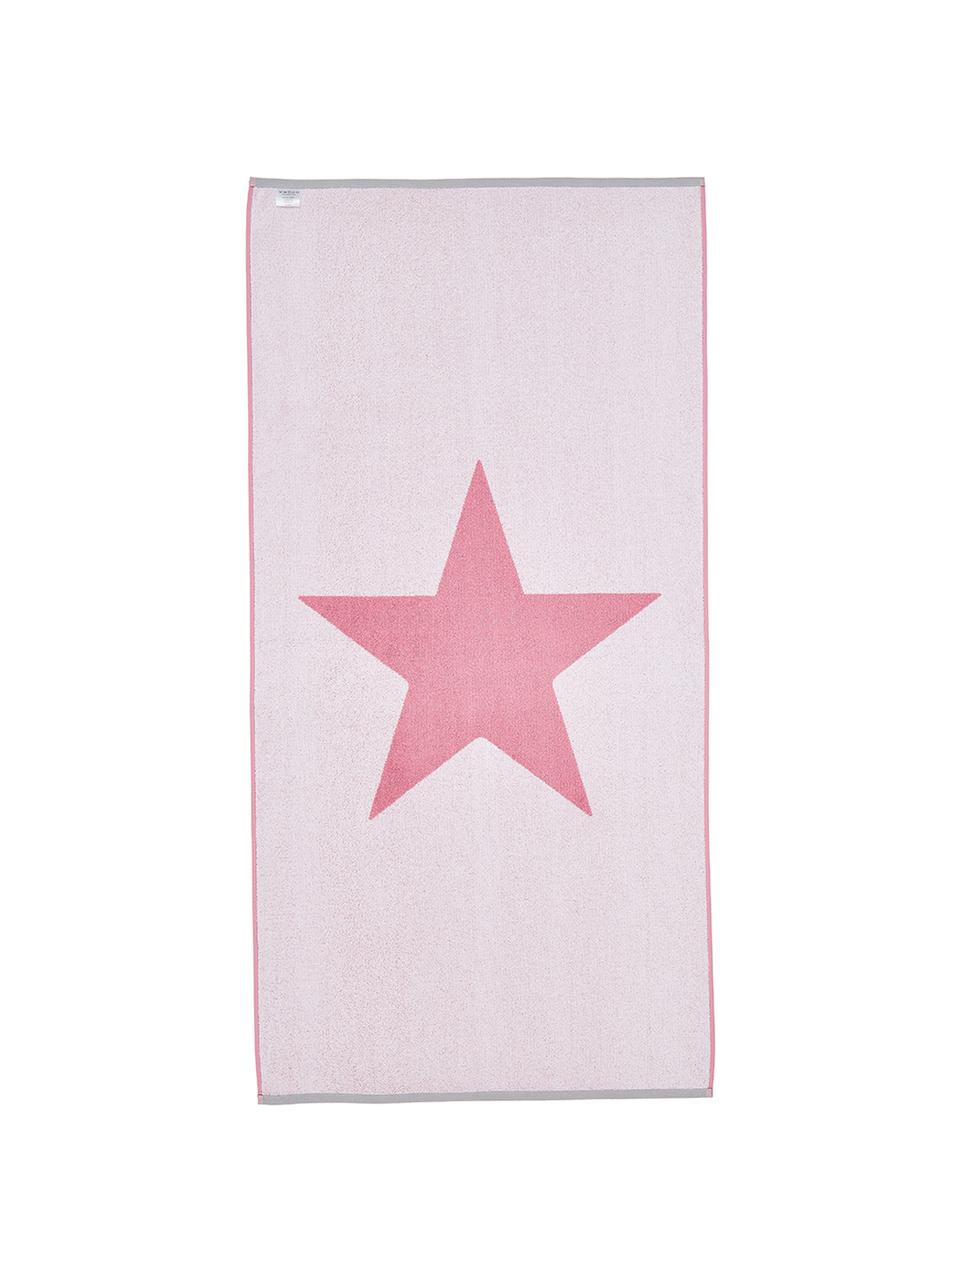 Strandtuch Spork mit Sternen-Motiv, 100% Baumwolle
leichte Qualität 380 g/m², Pink, Weiß, 80 x 160 cm